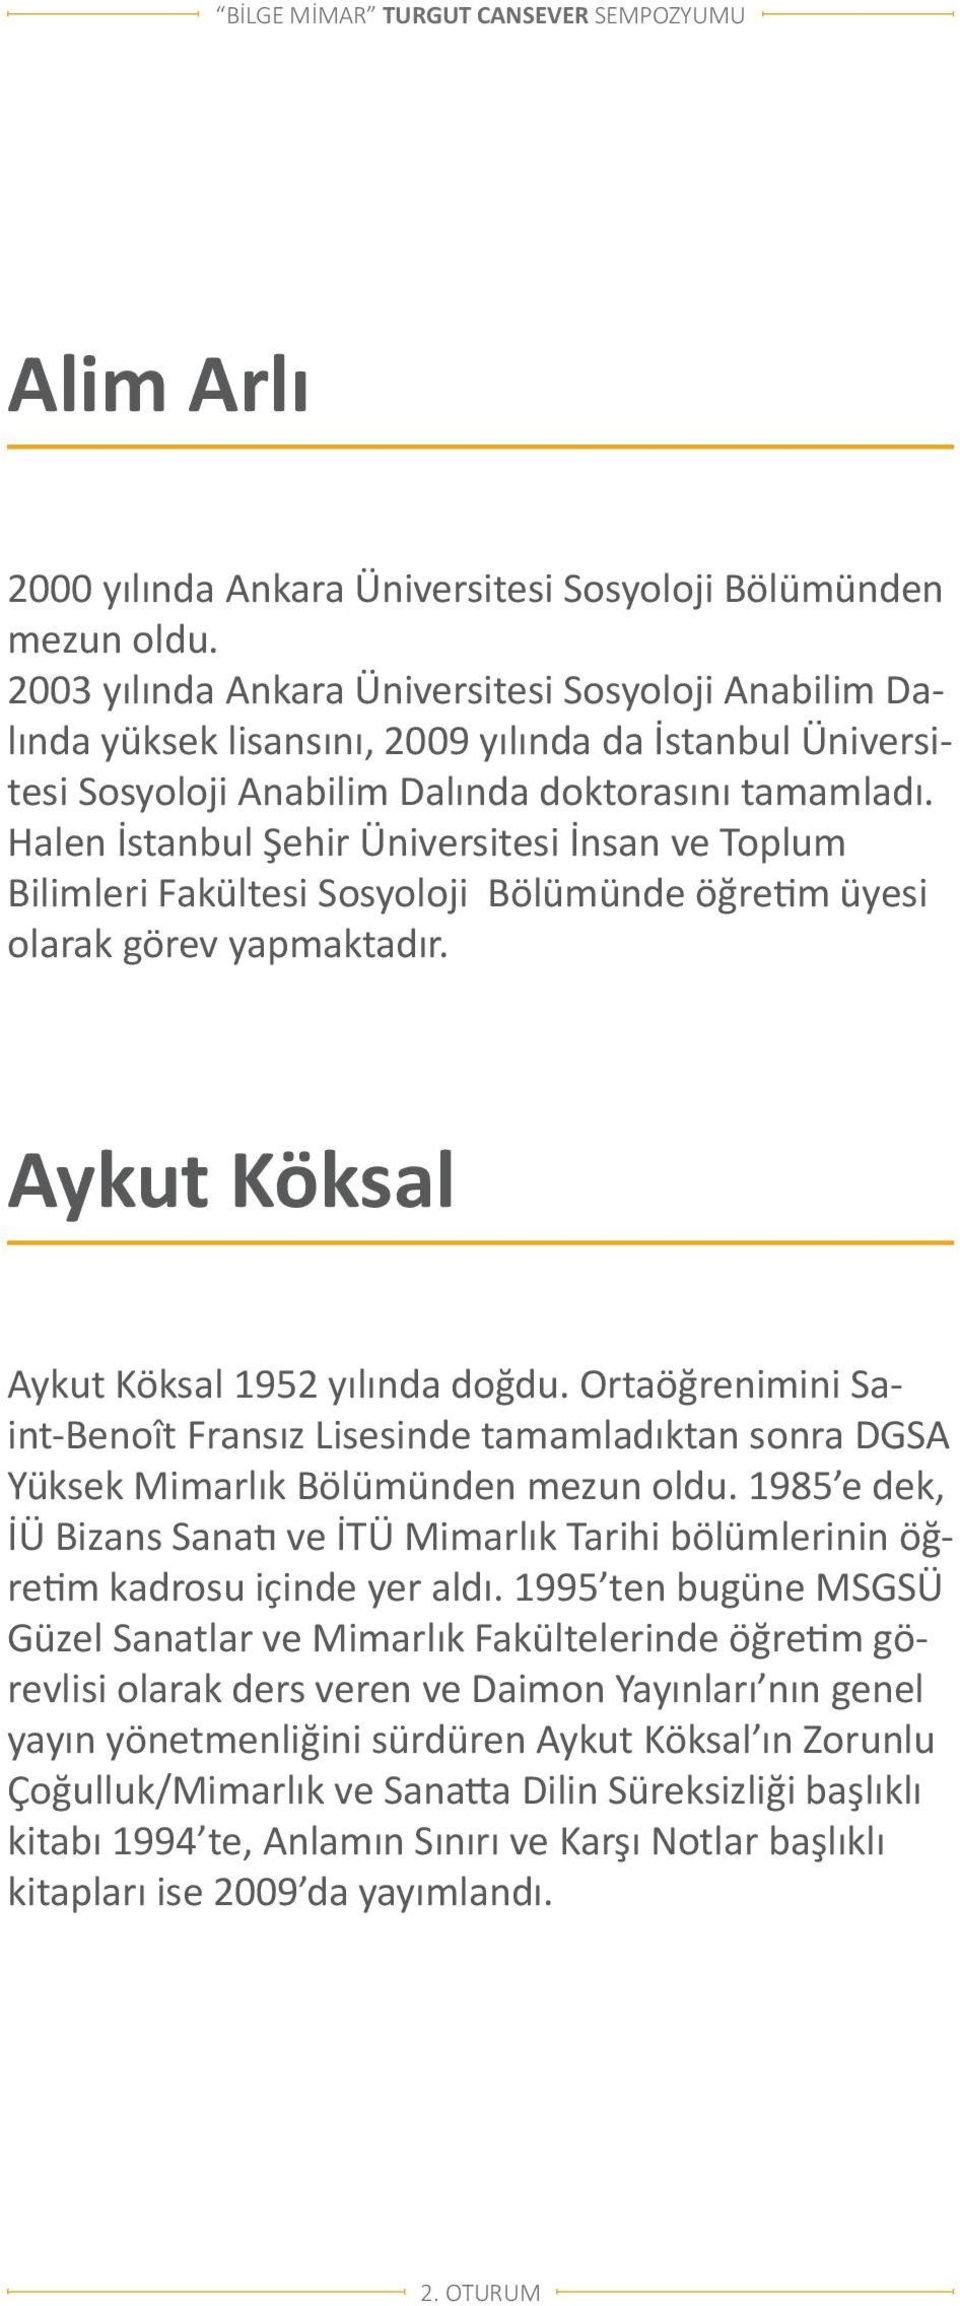 Halen İstanbul Şehir Üniversitesi İnsan ve Toplum Bilimleri Fakültesi Sosyoloji Bölümünde öğretim üyesi olarak görev yapmaktadır. Aykut Köksal Aykut Köksal 1952 yılında doğdu.